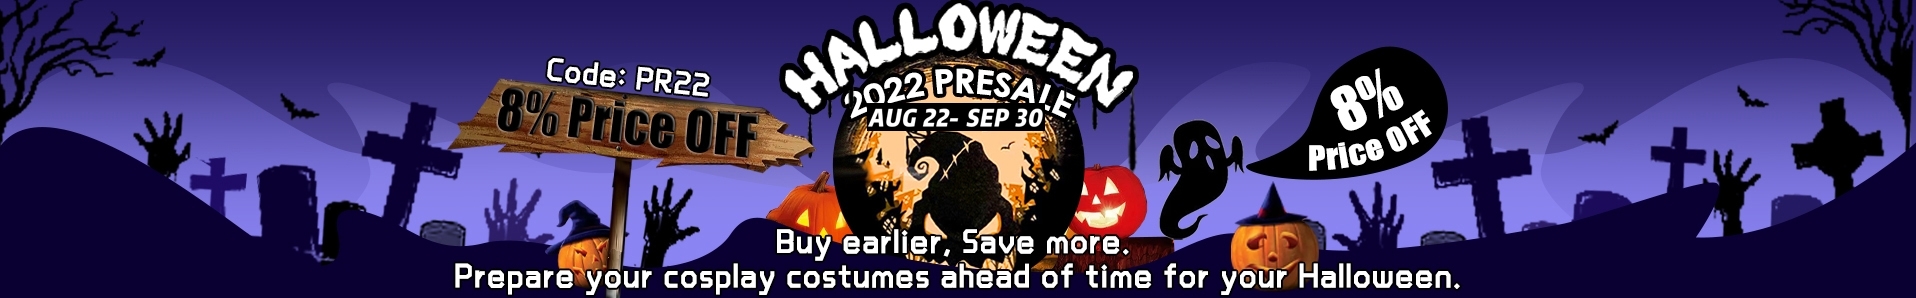 simcosplay halloween 2022 cosplay discount code pr22